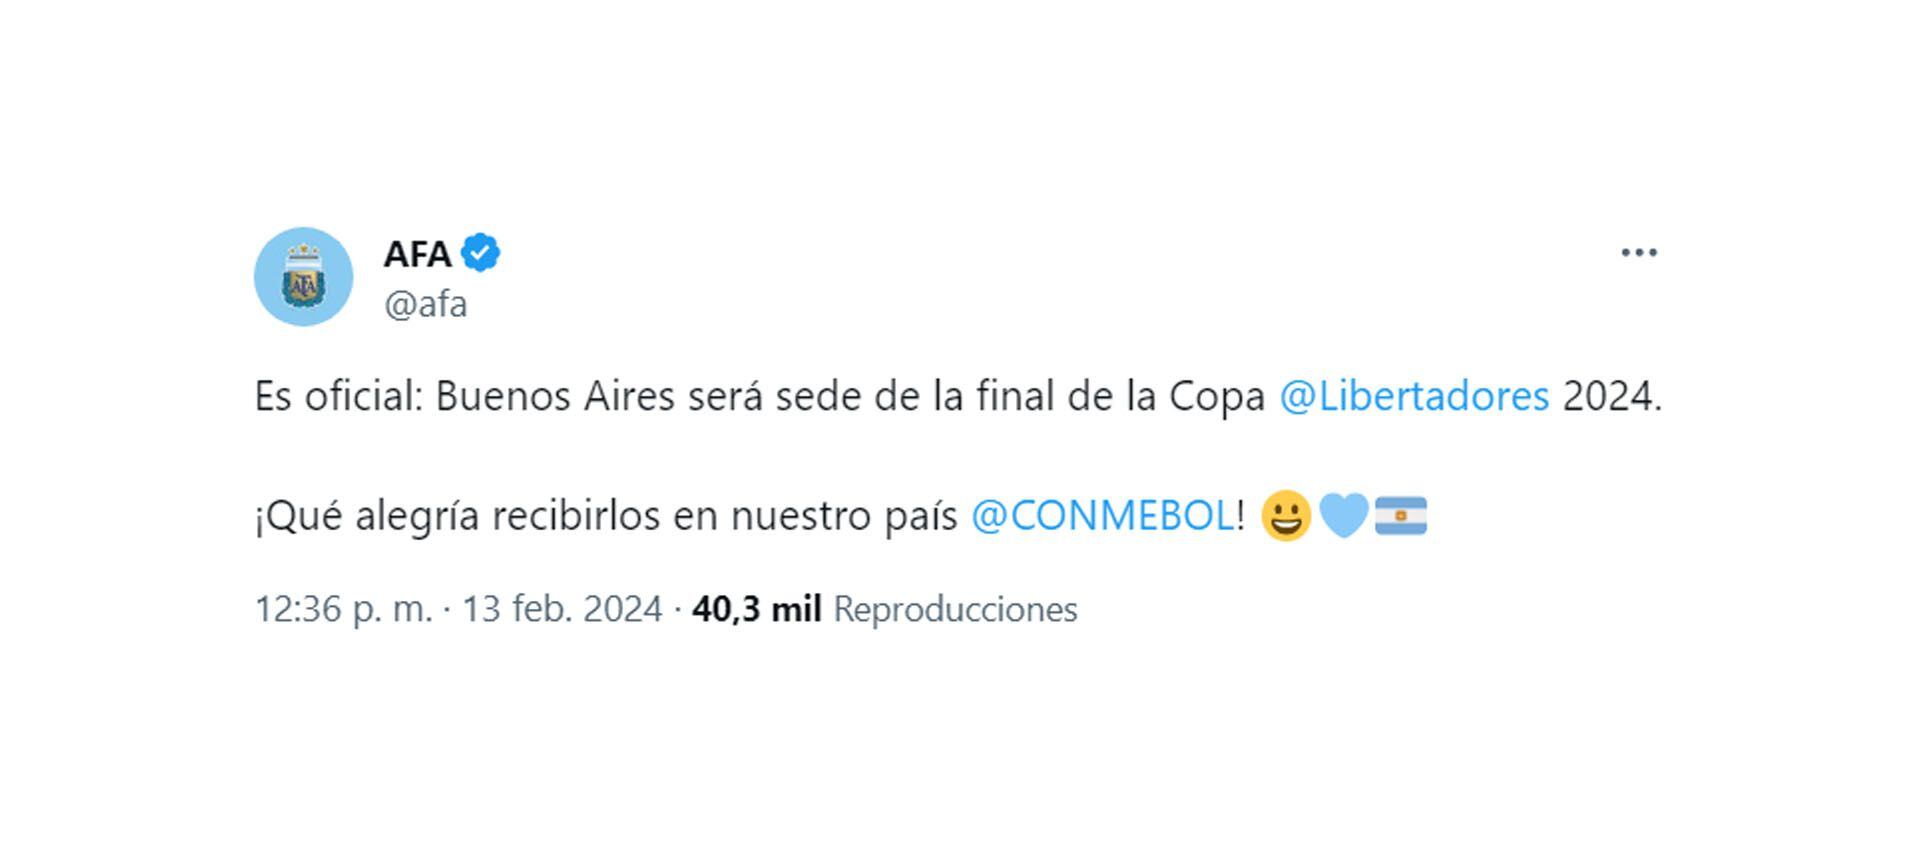 Confirmaron que la final de la Copa Libertadores 2024 será en Buenos Aires tuit